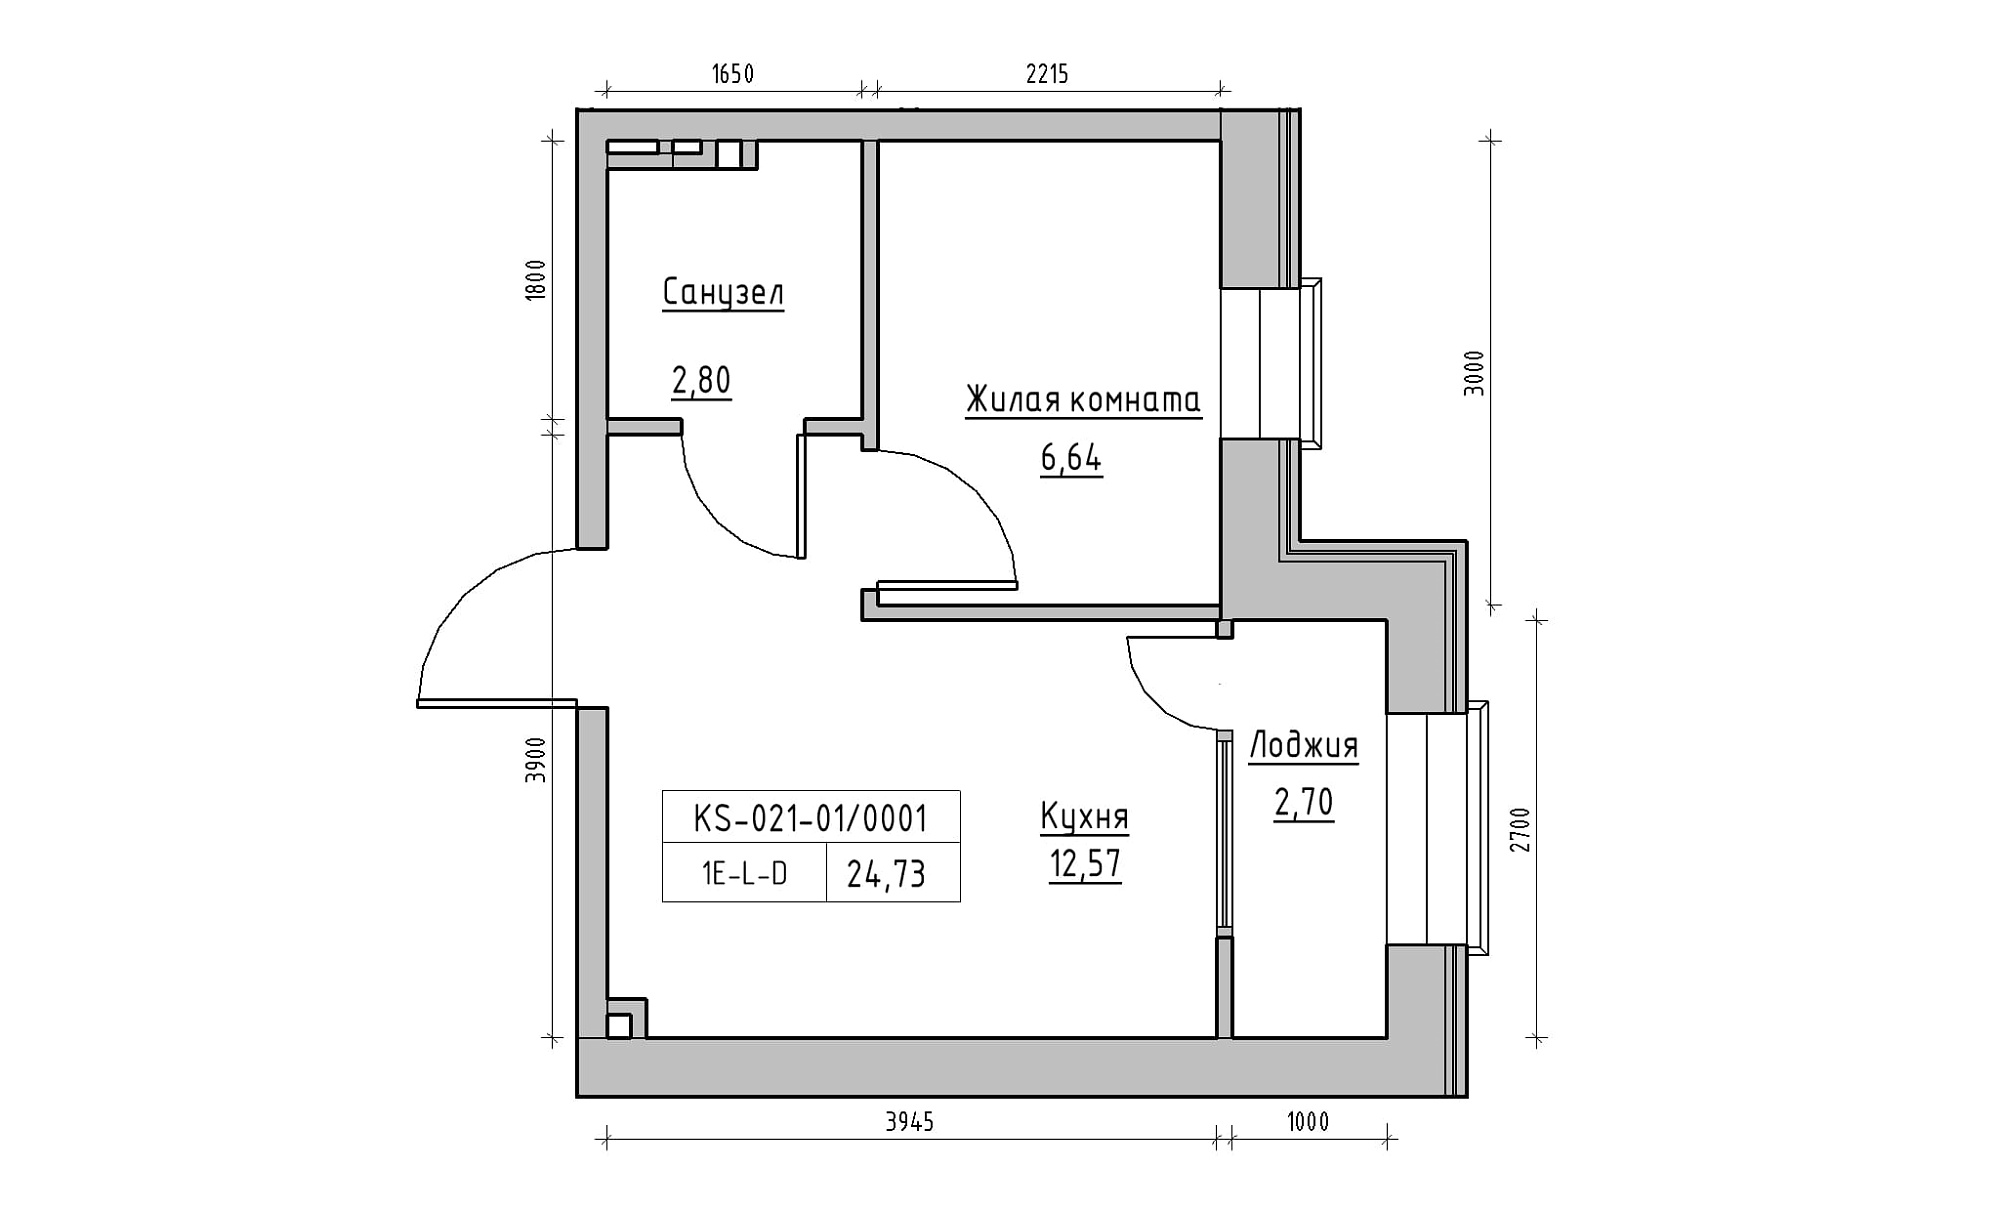 Планировка 1-к квартира площей 24.73м2, KS-021-01/0001.